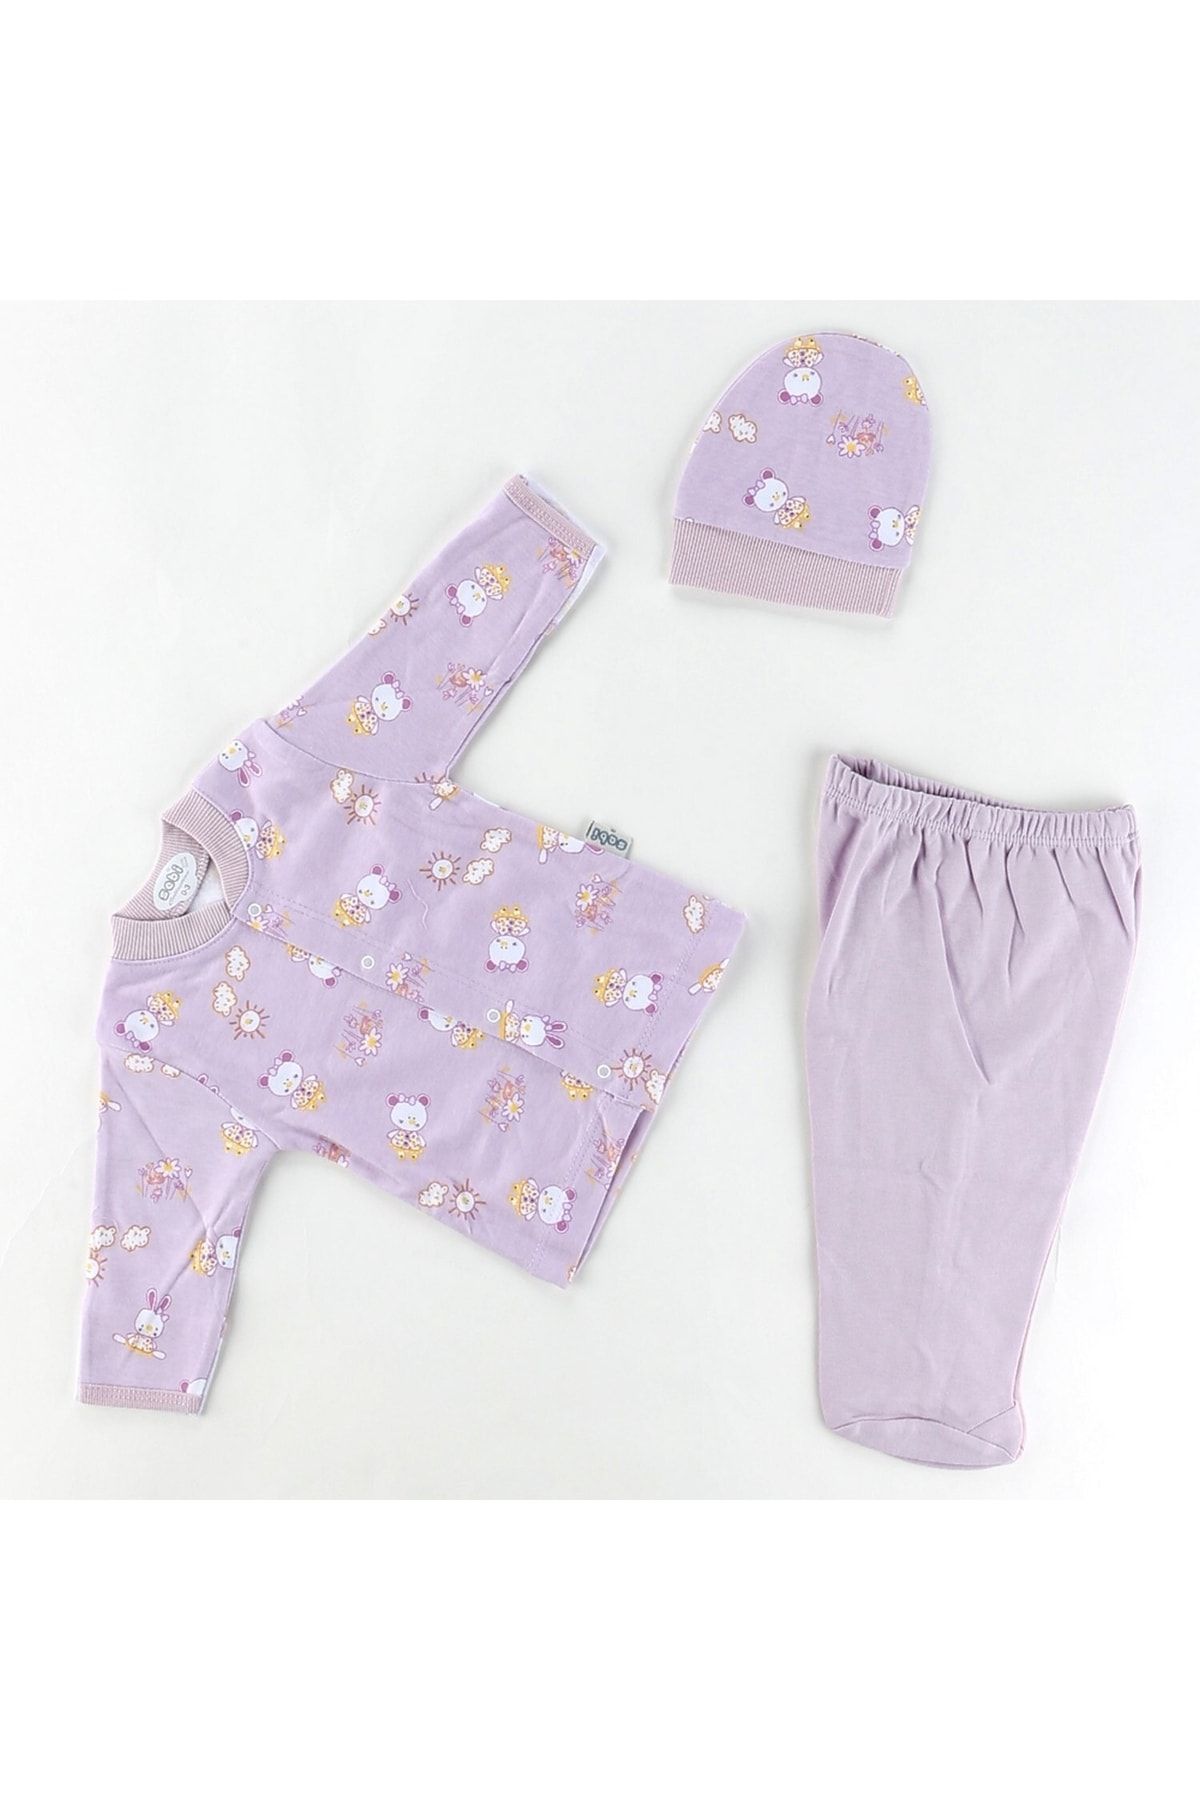 Sebi Bebe Ayılı Kız Desenli Pijama Takımı 2265